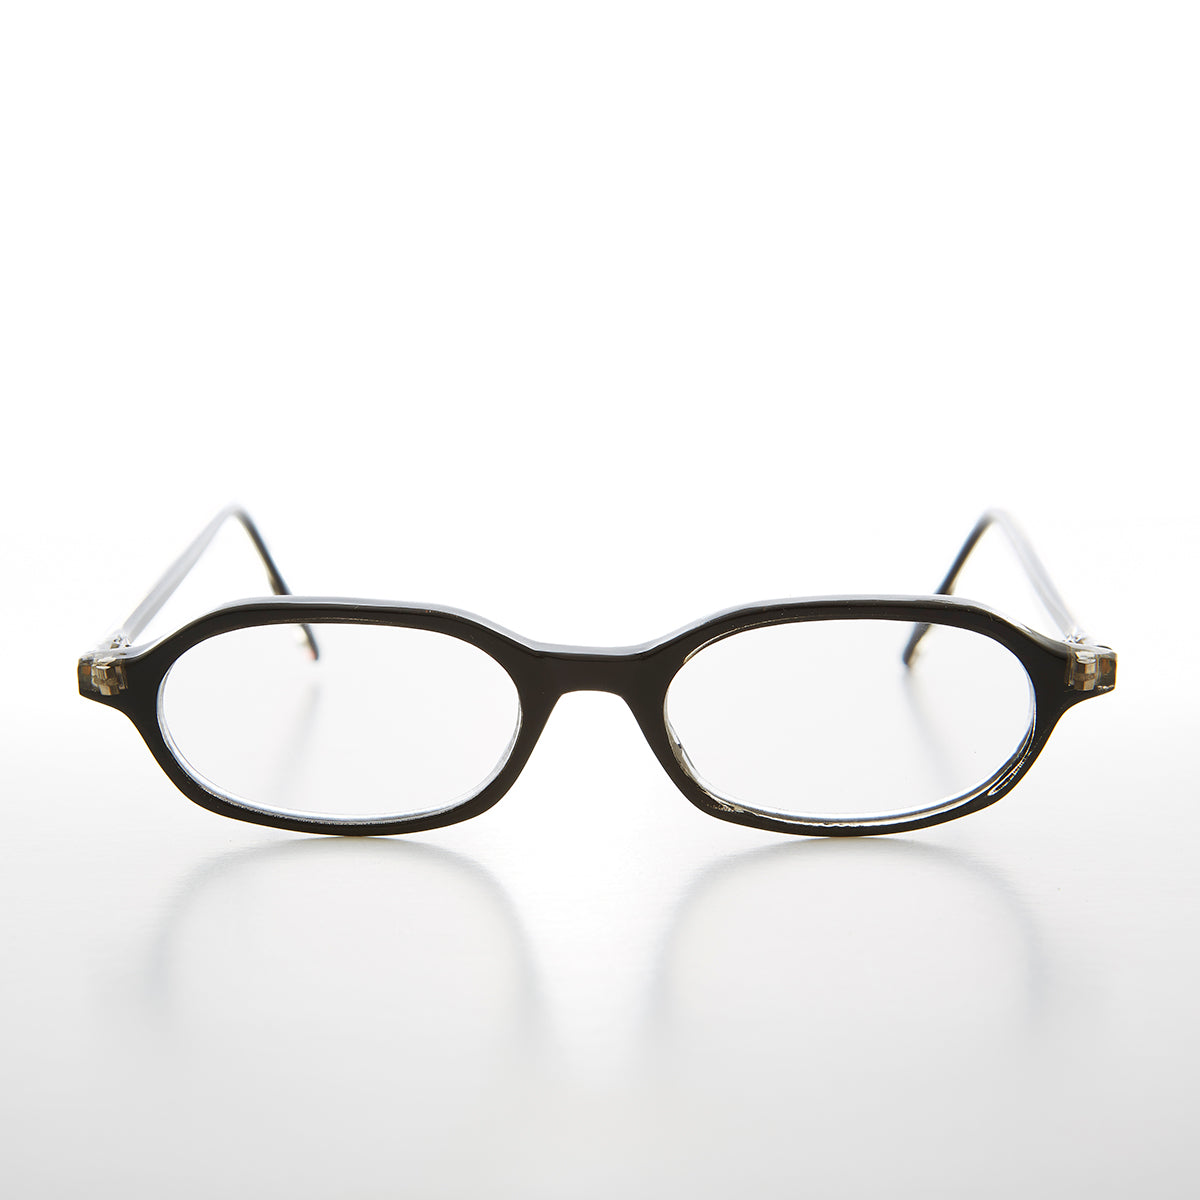 Black Rounded Rectangular Reading Glasses